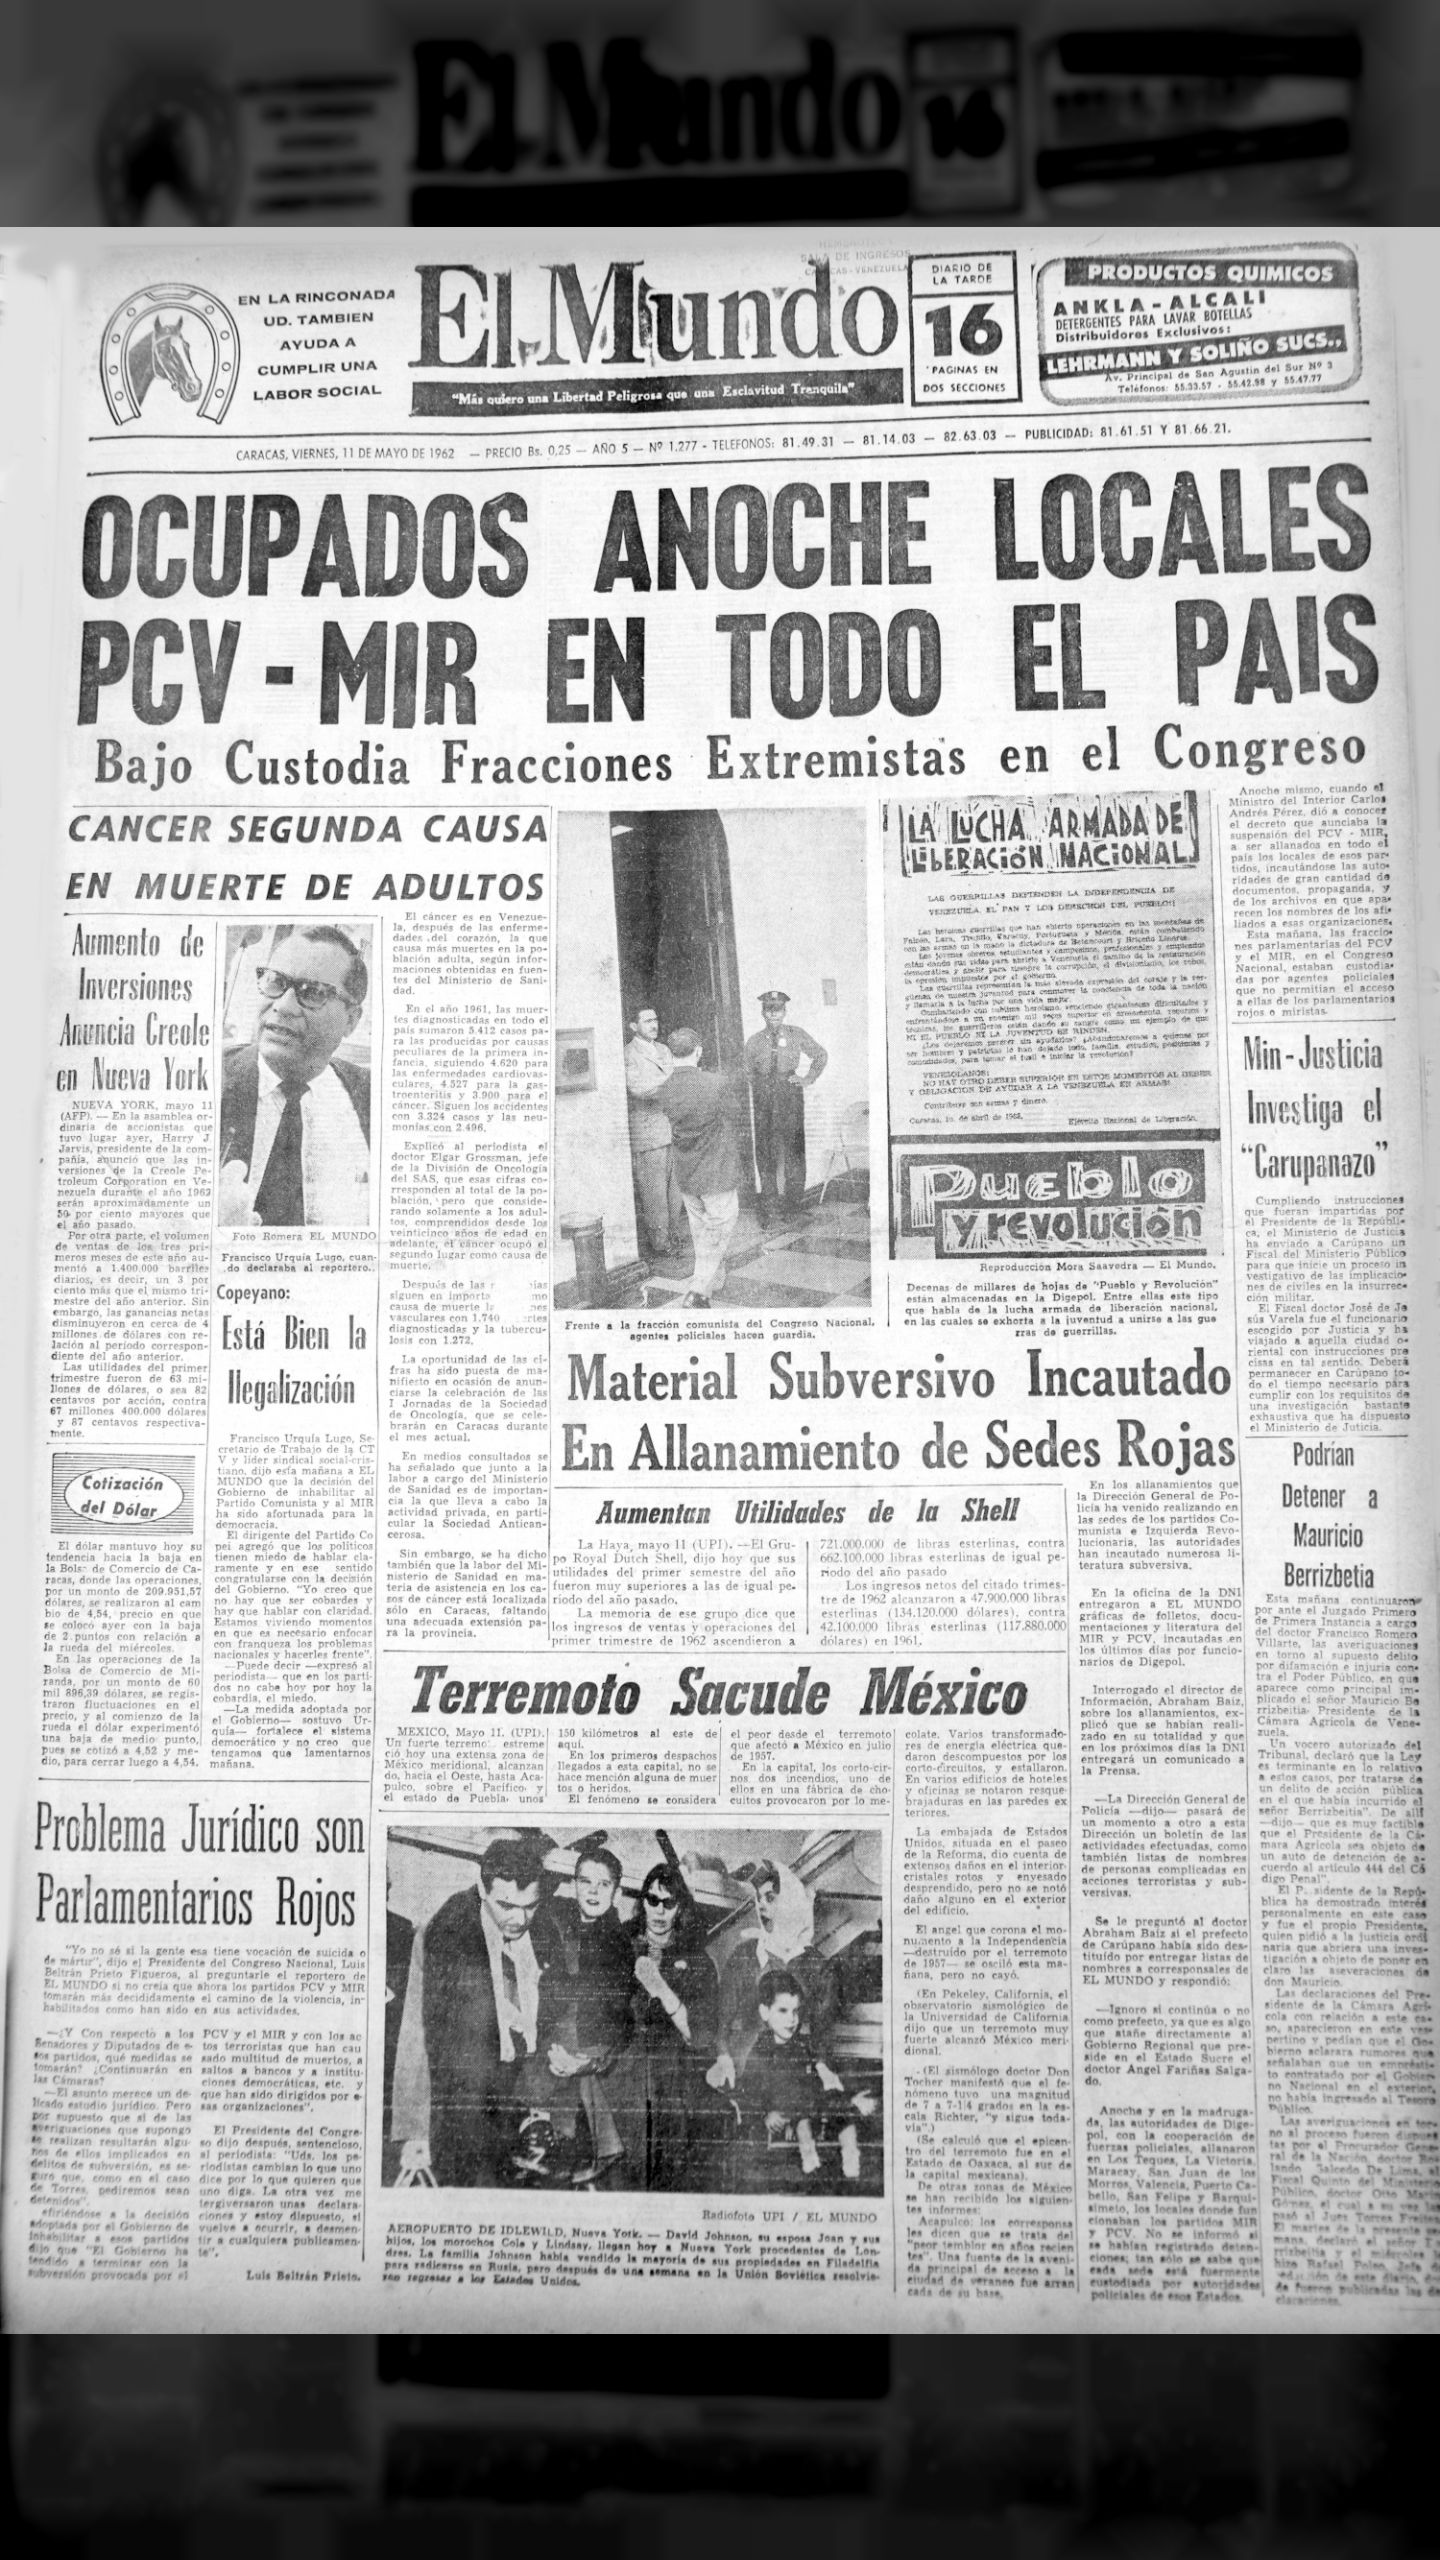 Ocupados locales PCV-MIR en todo el país (El Mundo, 11 de mayo de 1962)